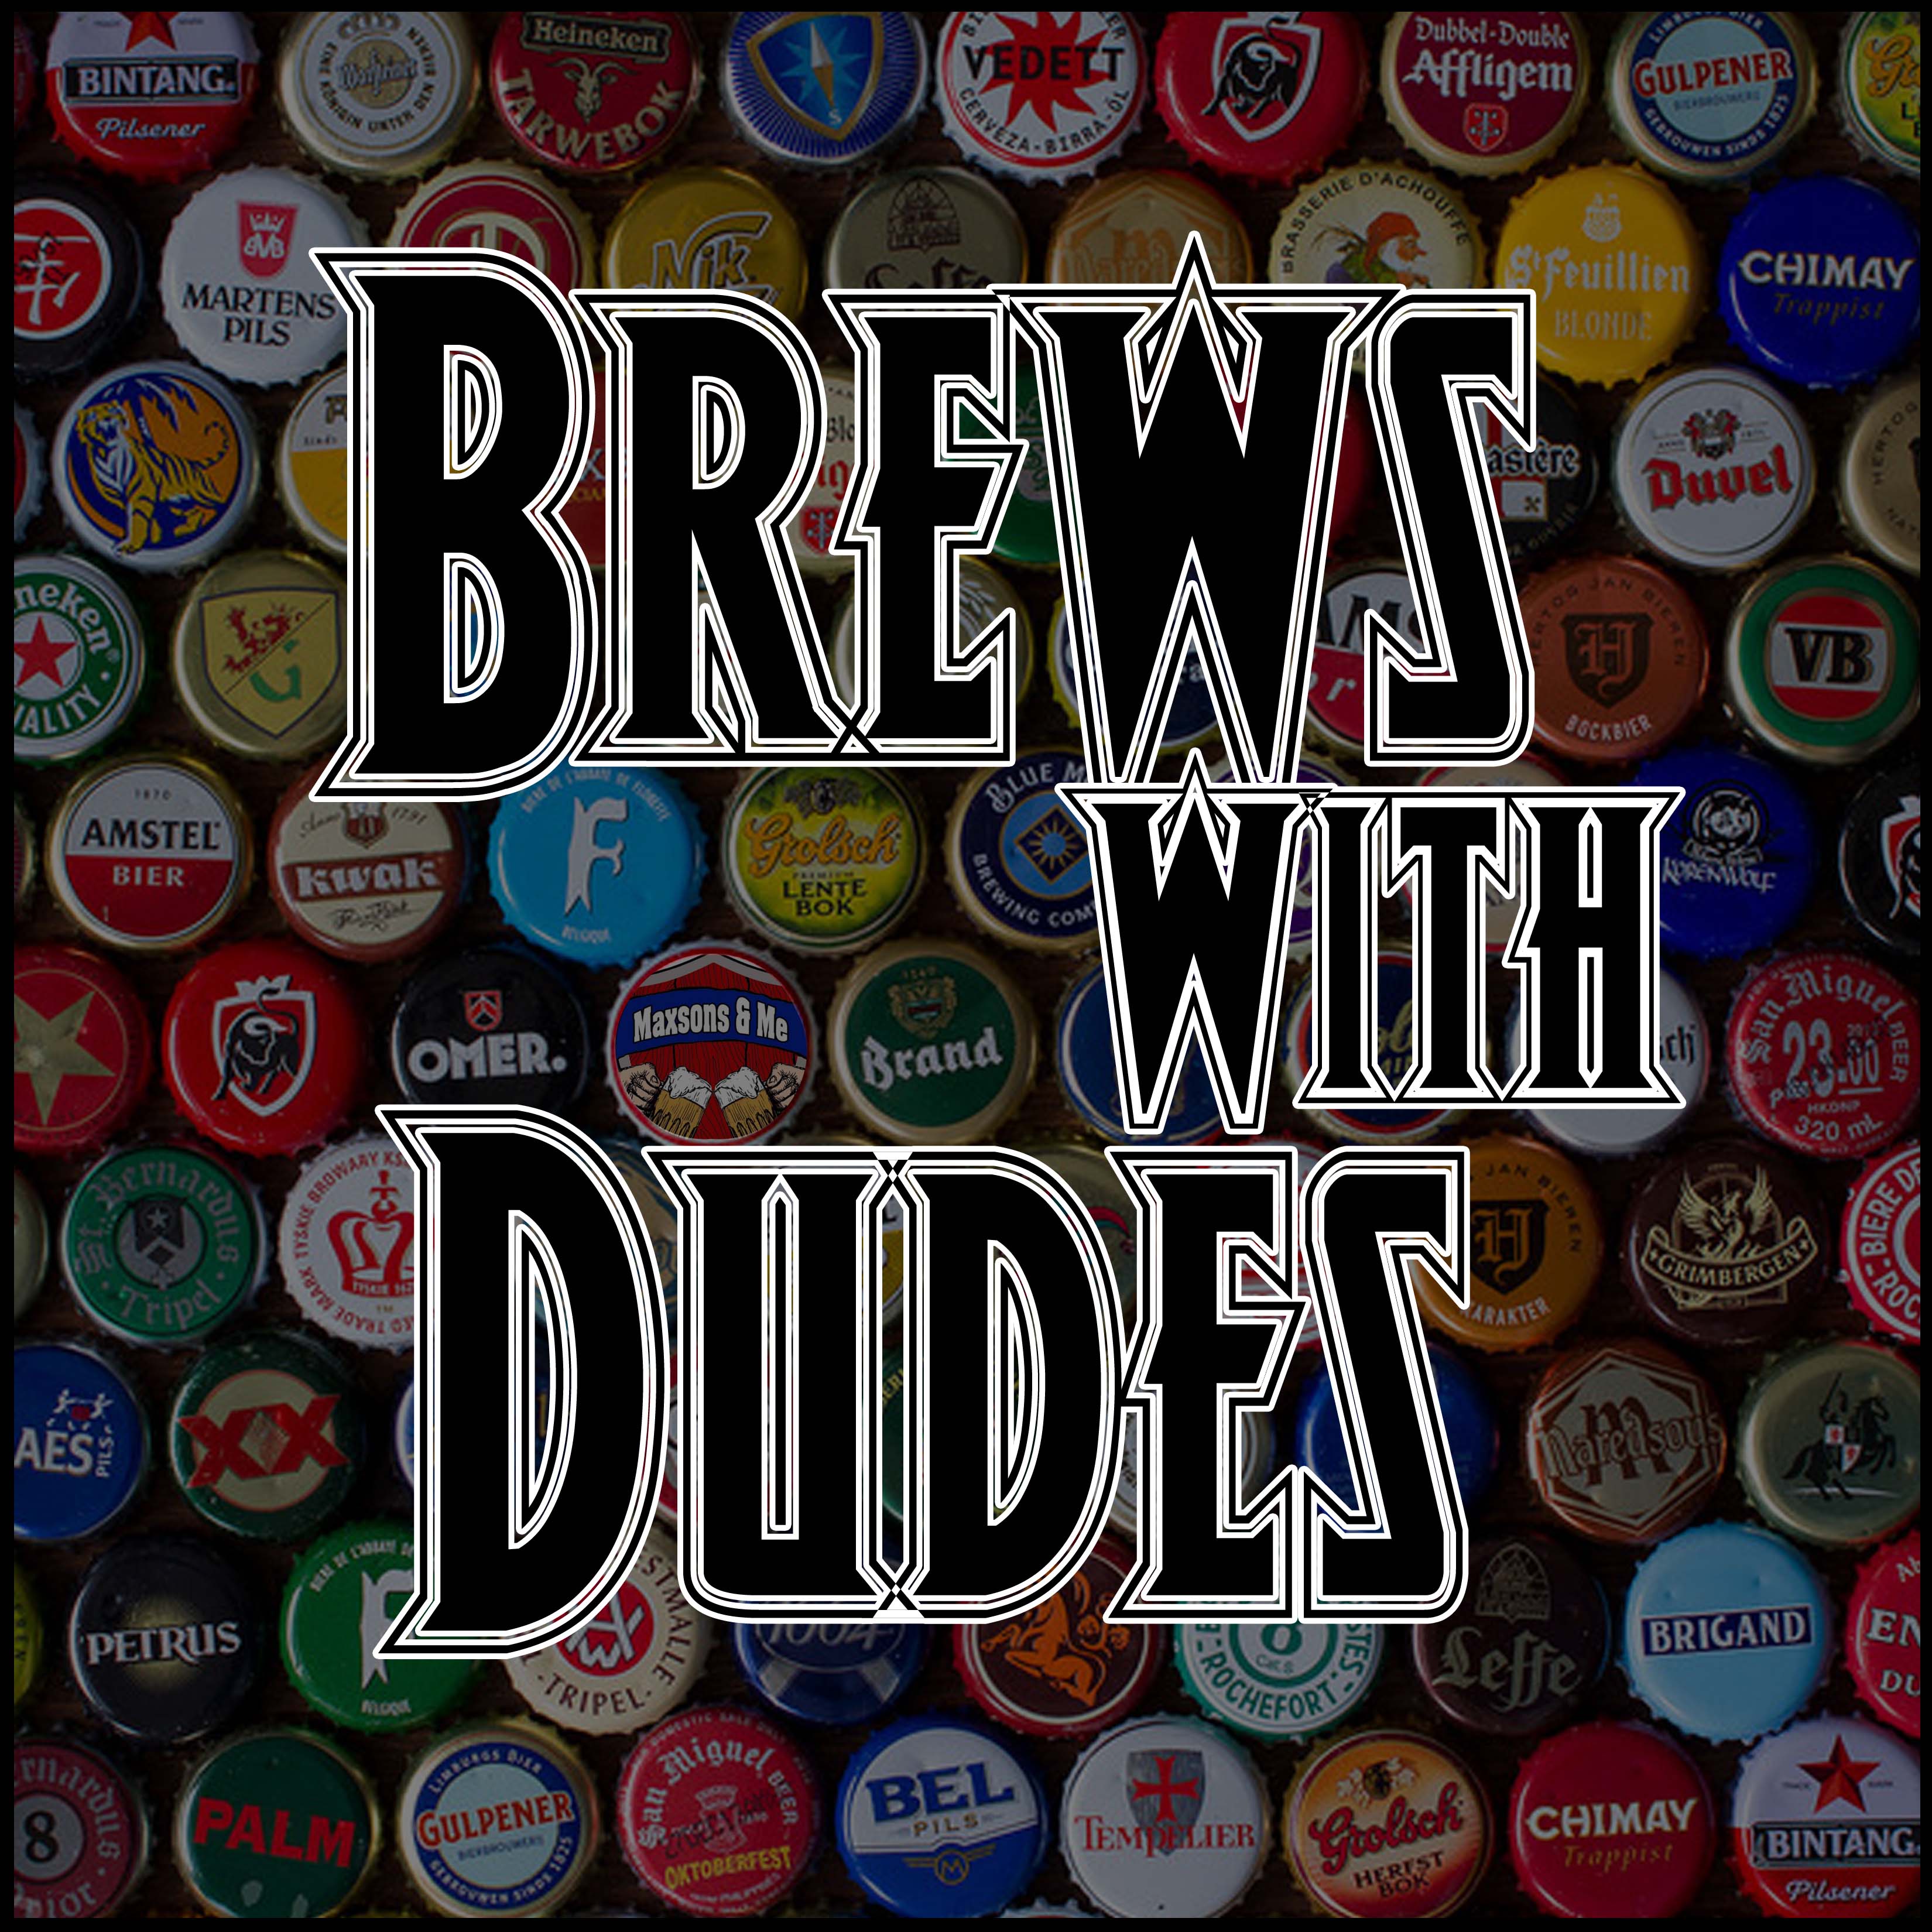 Brews With Dudes 006 - JUICY